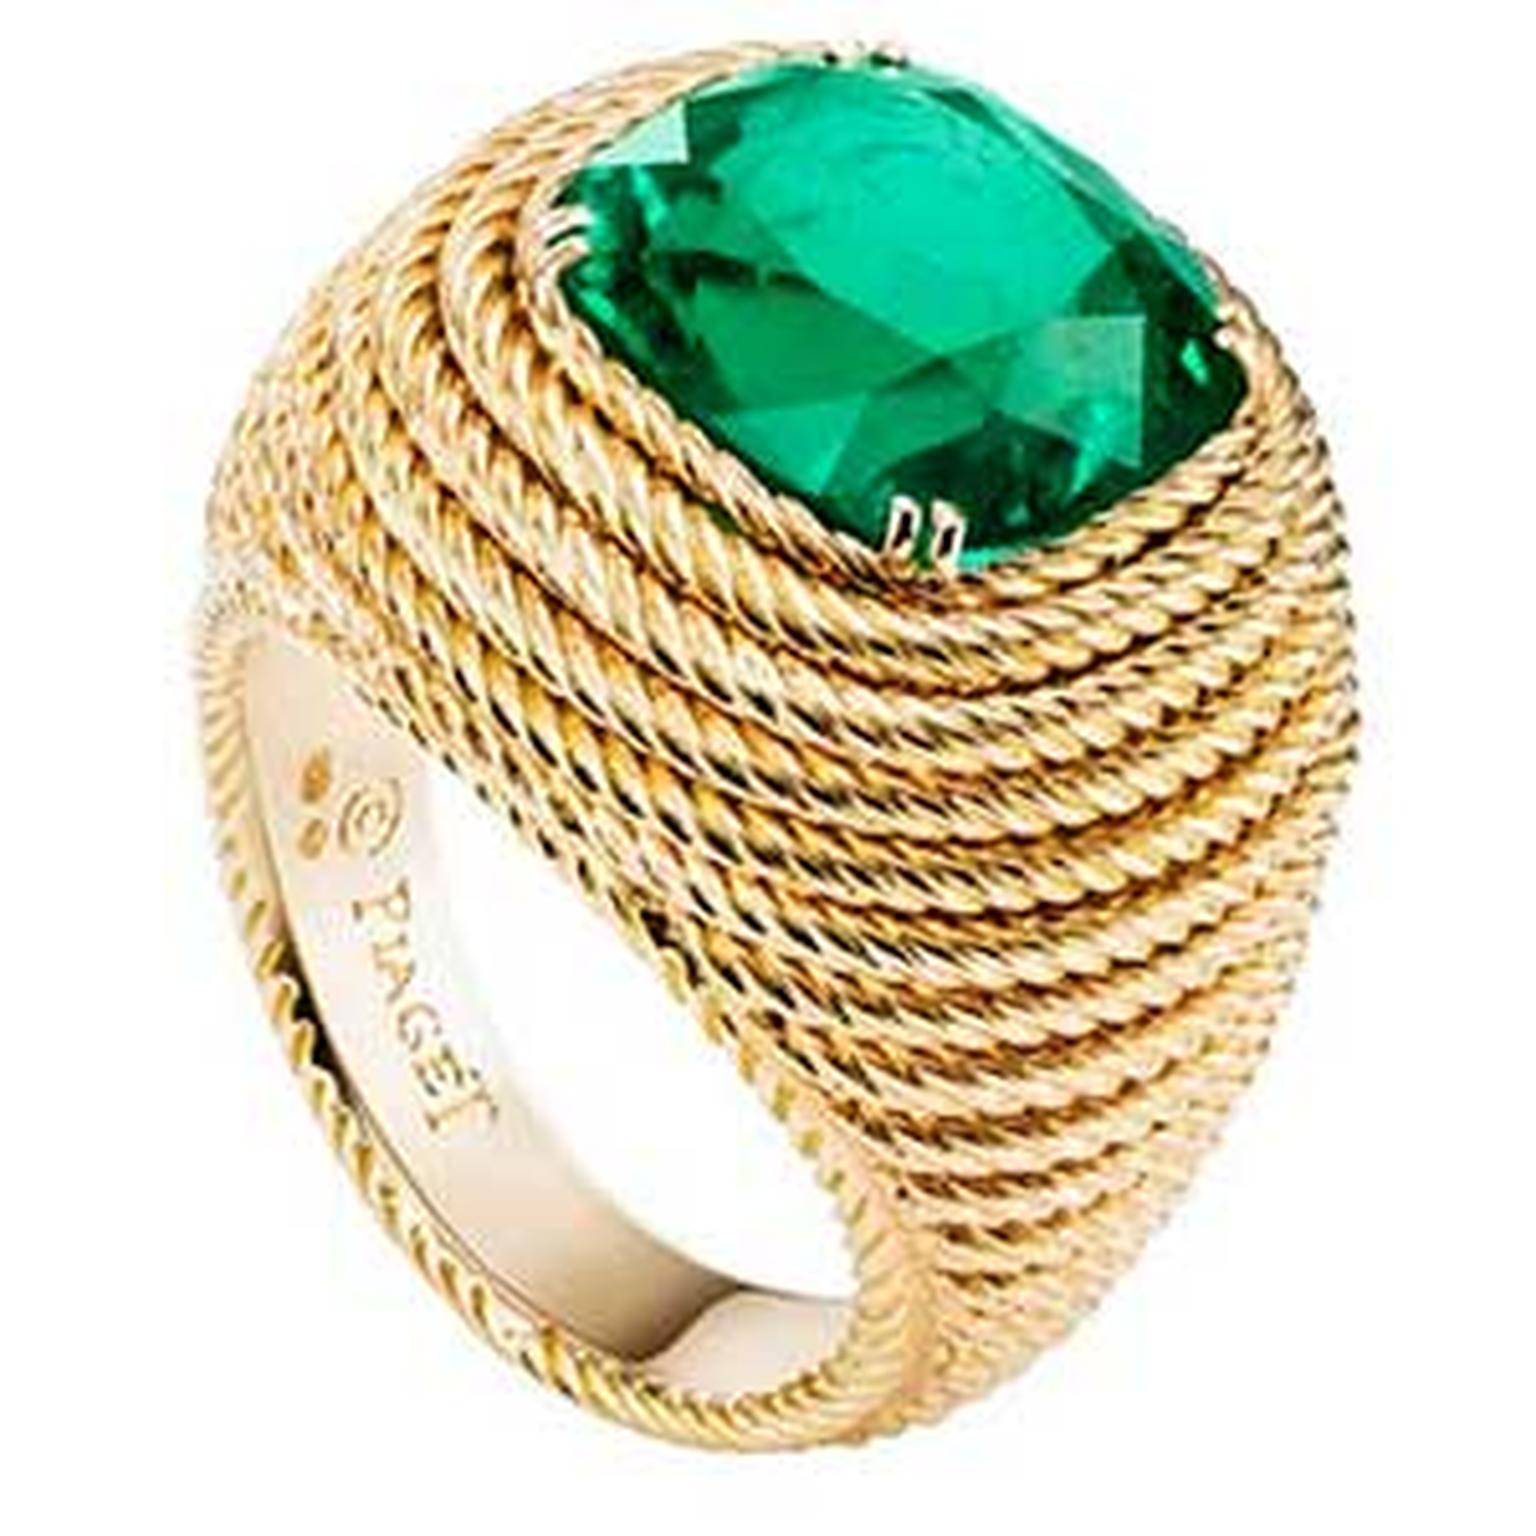 Piaget emerald ring